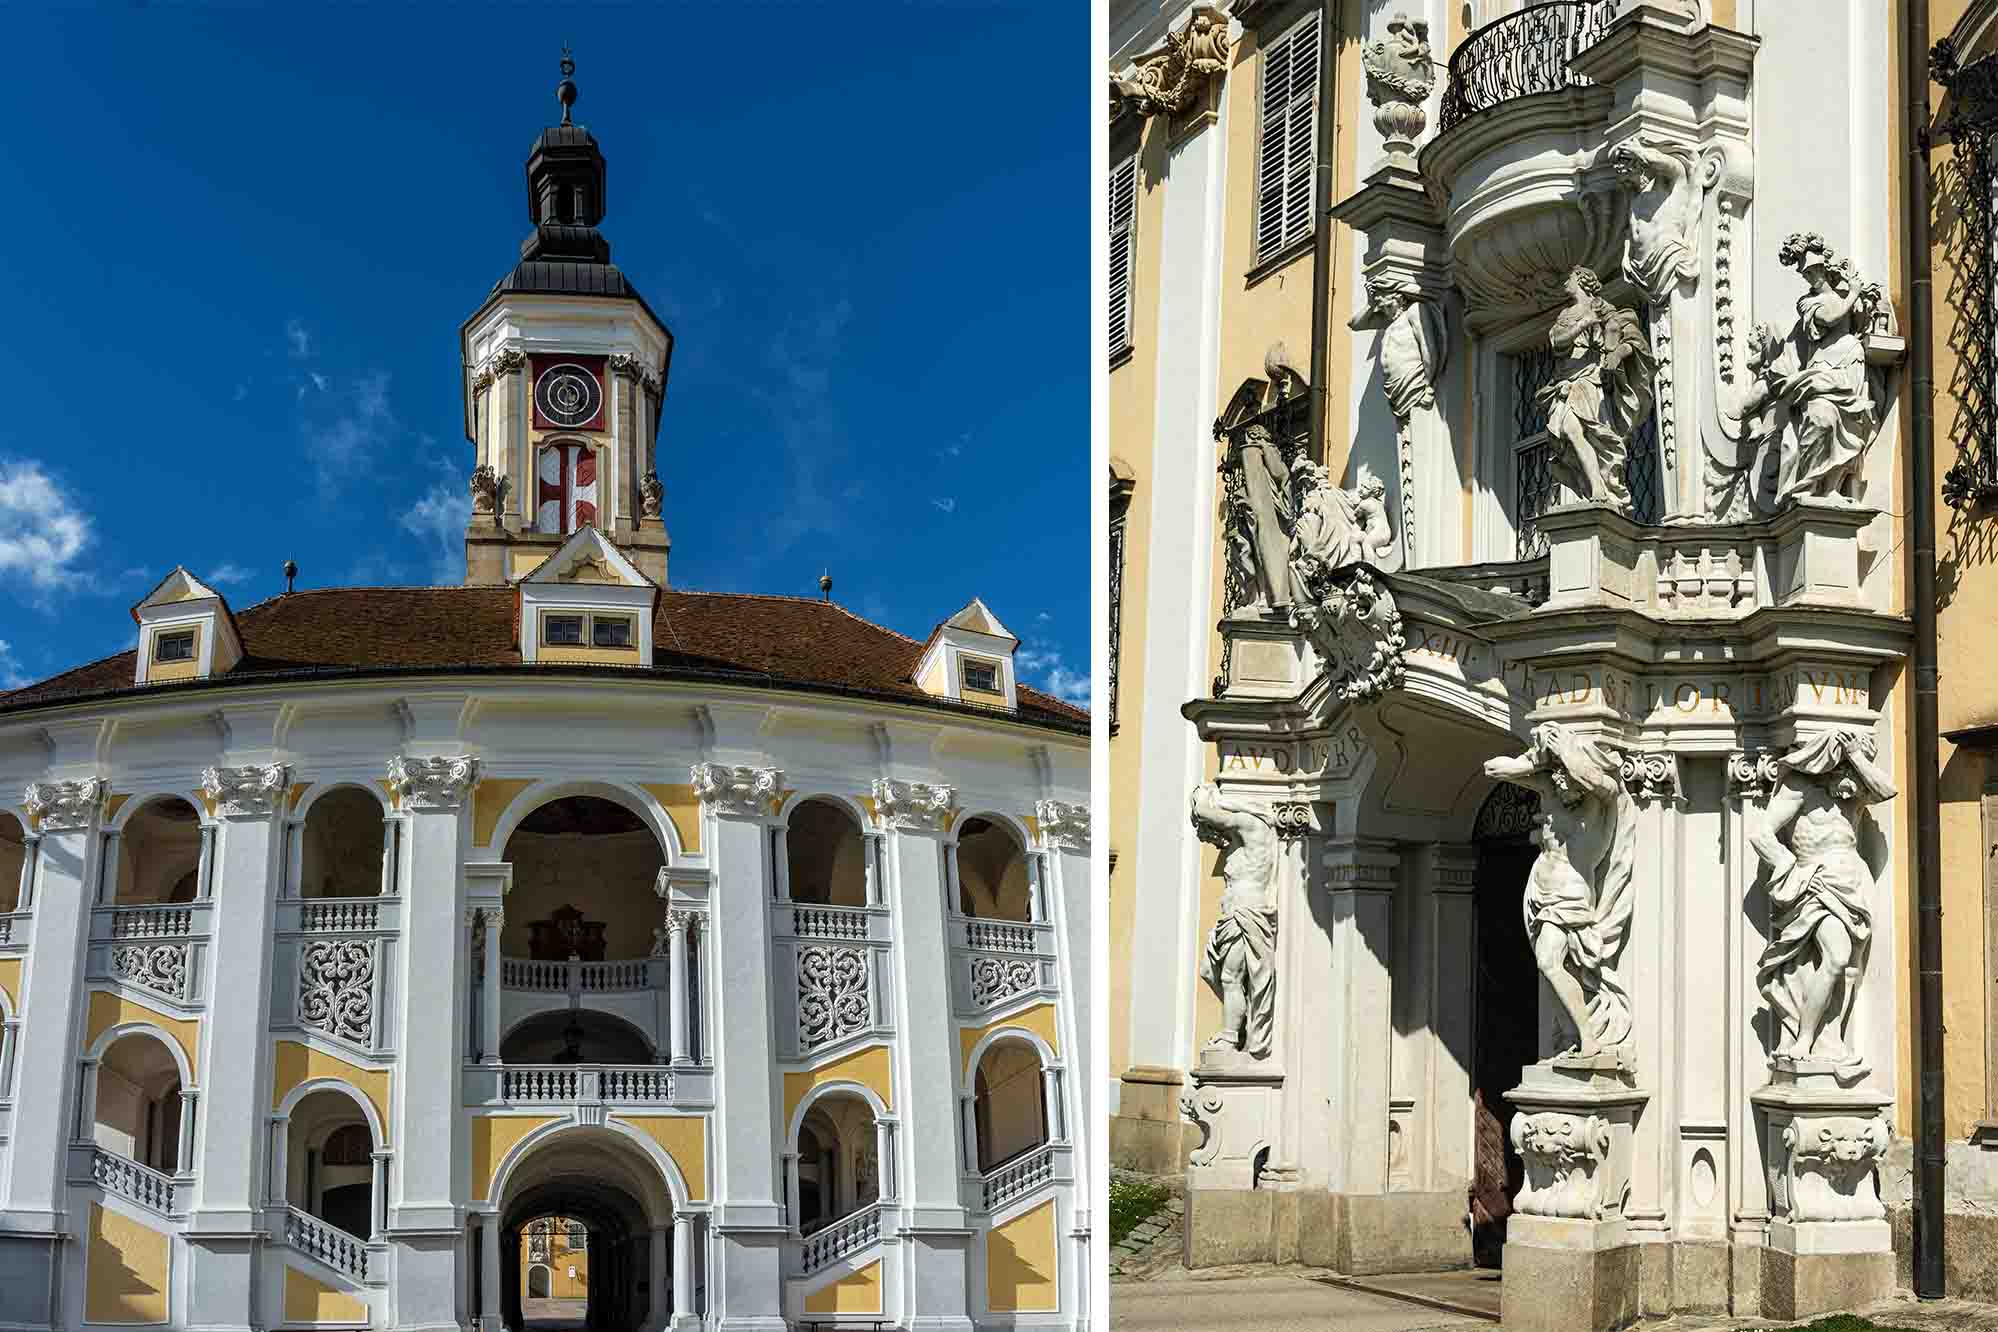 Quang cảnh tháp đồng hồ và các bức tượng bên ngoài Tu viện Thánh Florian. (Ảnh: Karl Allen Lugmayer/Shutterstock)